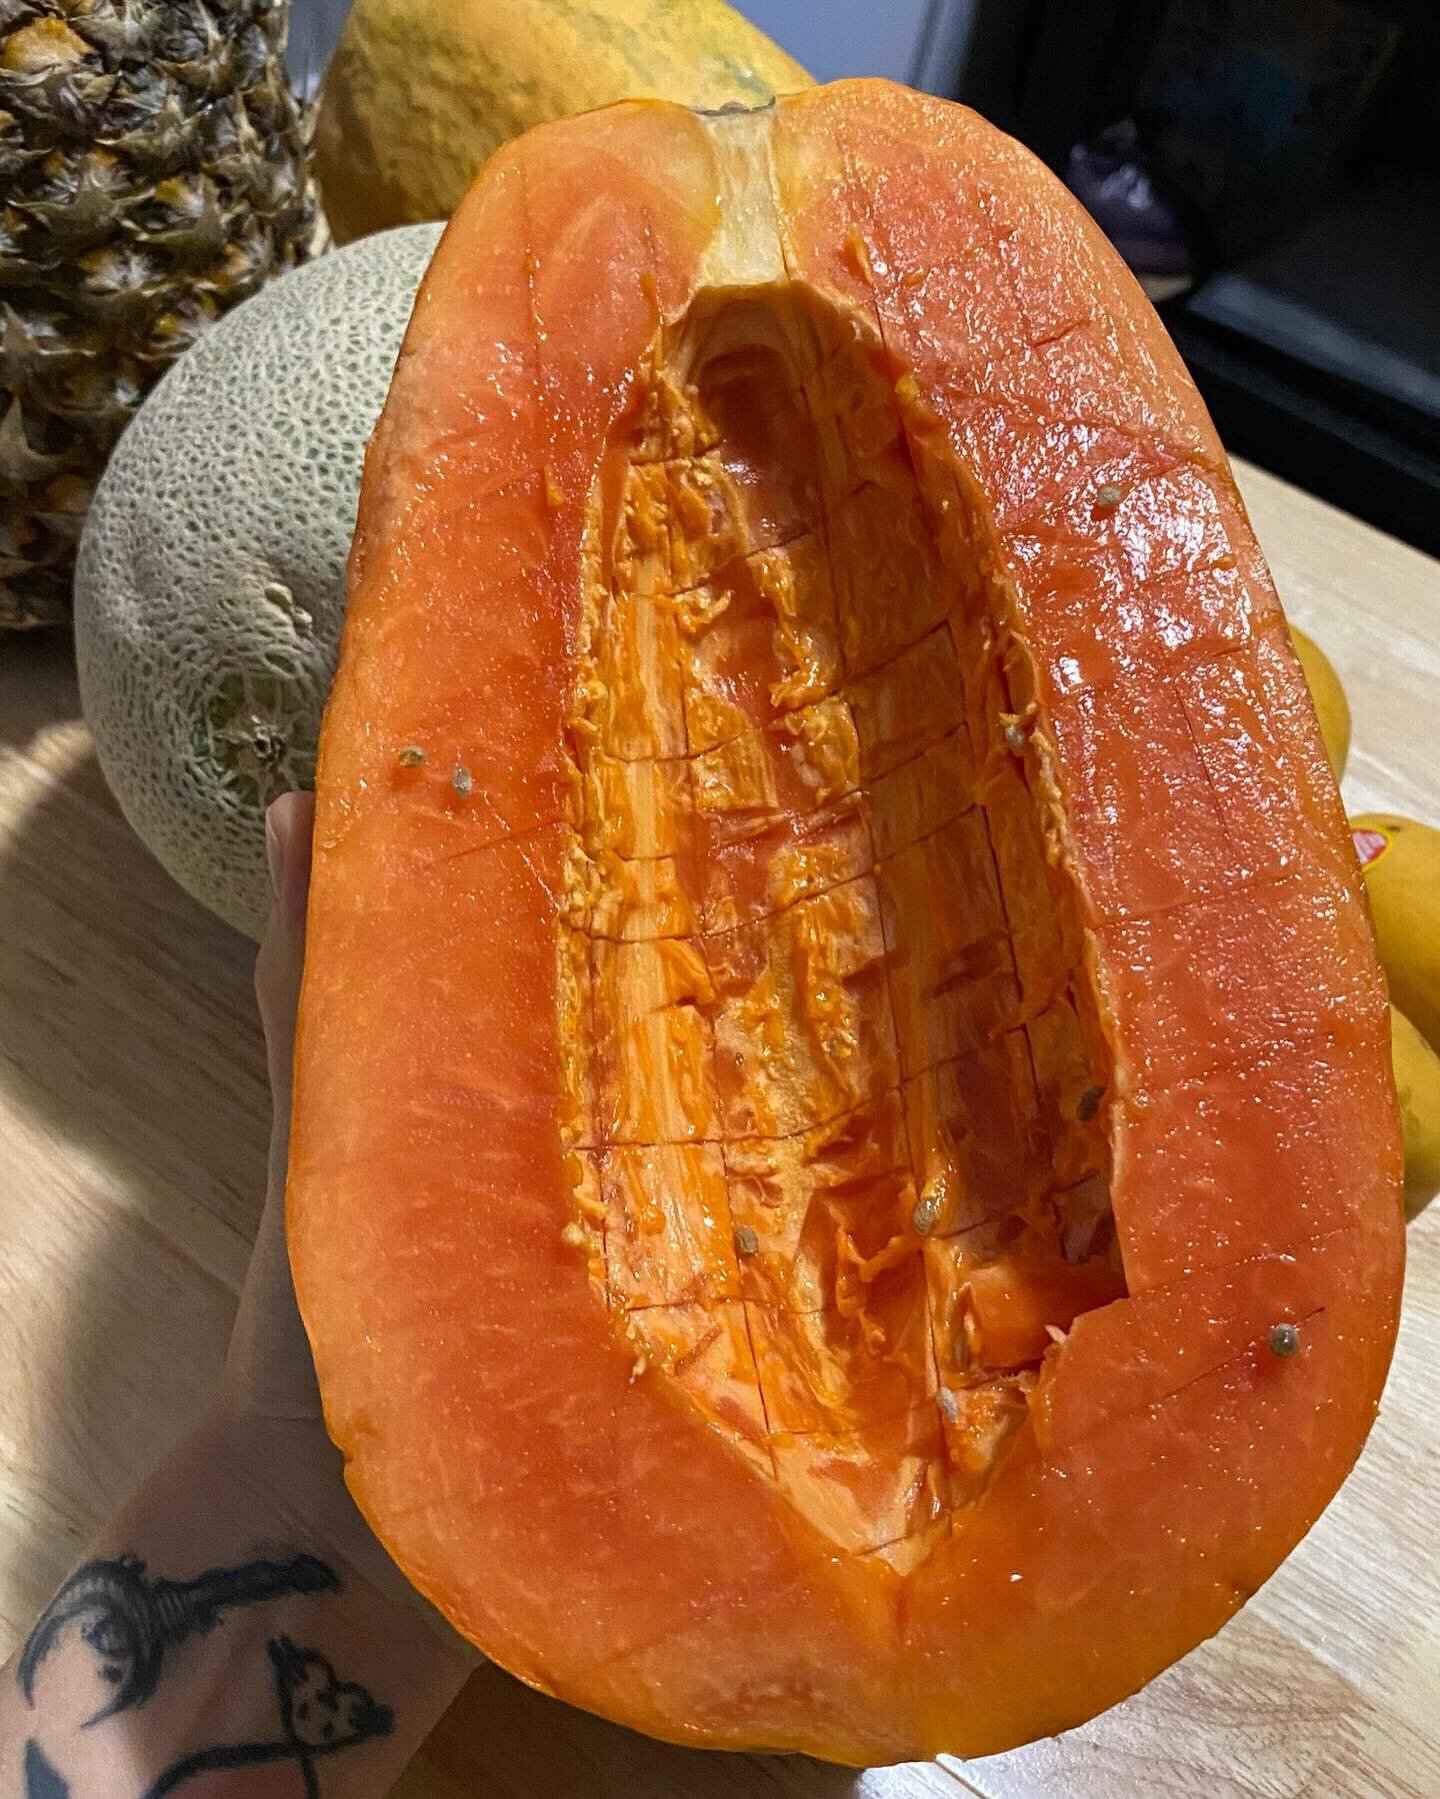 A whole week of giant papayas 🌞 gratitude 
Thank you @tropicalfruitboxusa 

#papaya #frugivore #fruitarian #electricfoods #h3o #fruit #fruitporn #fruity